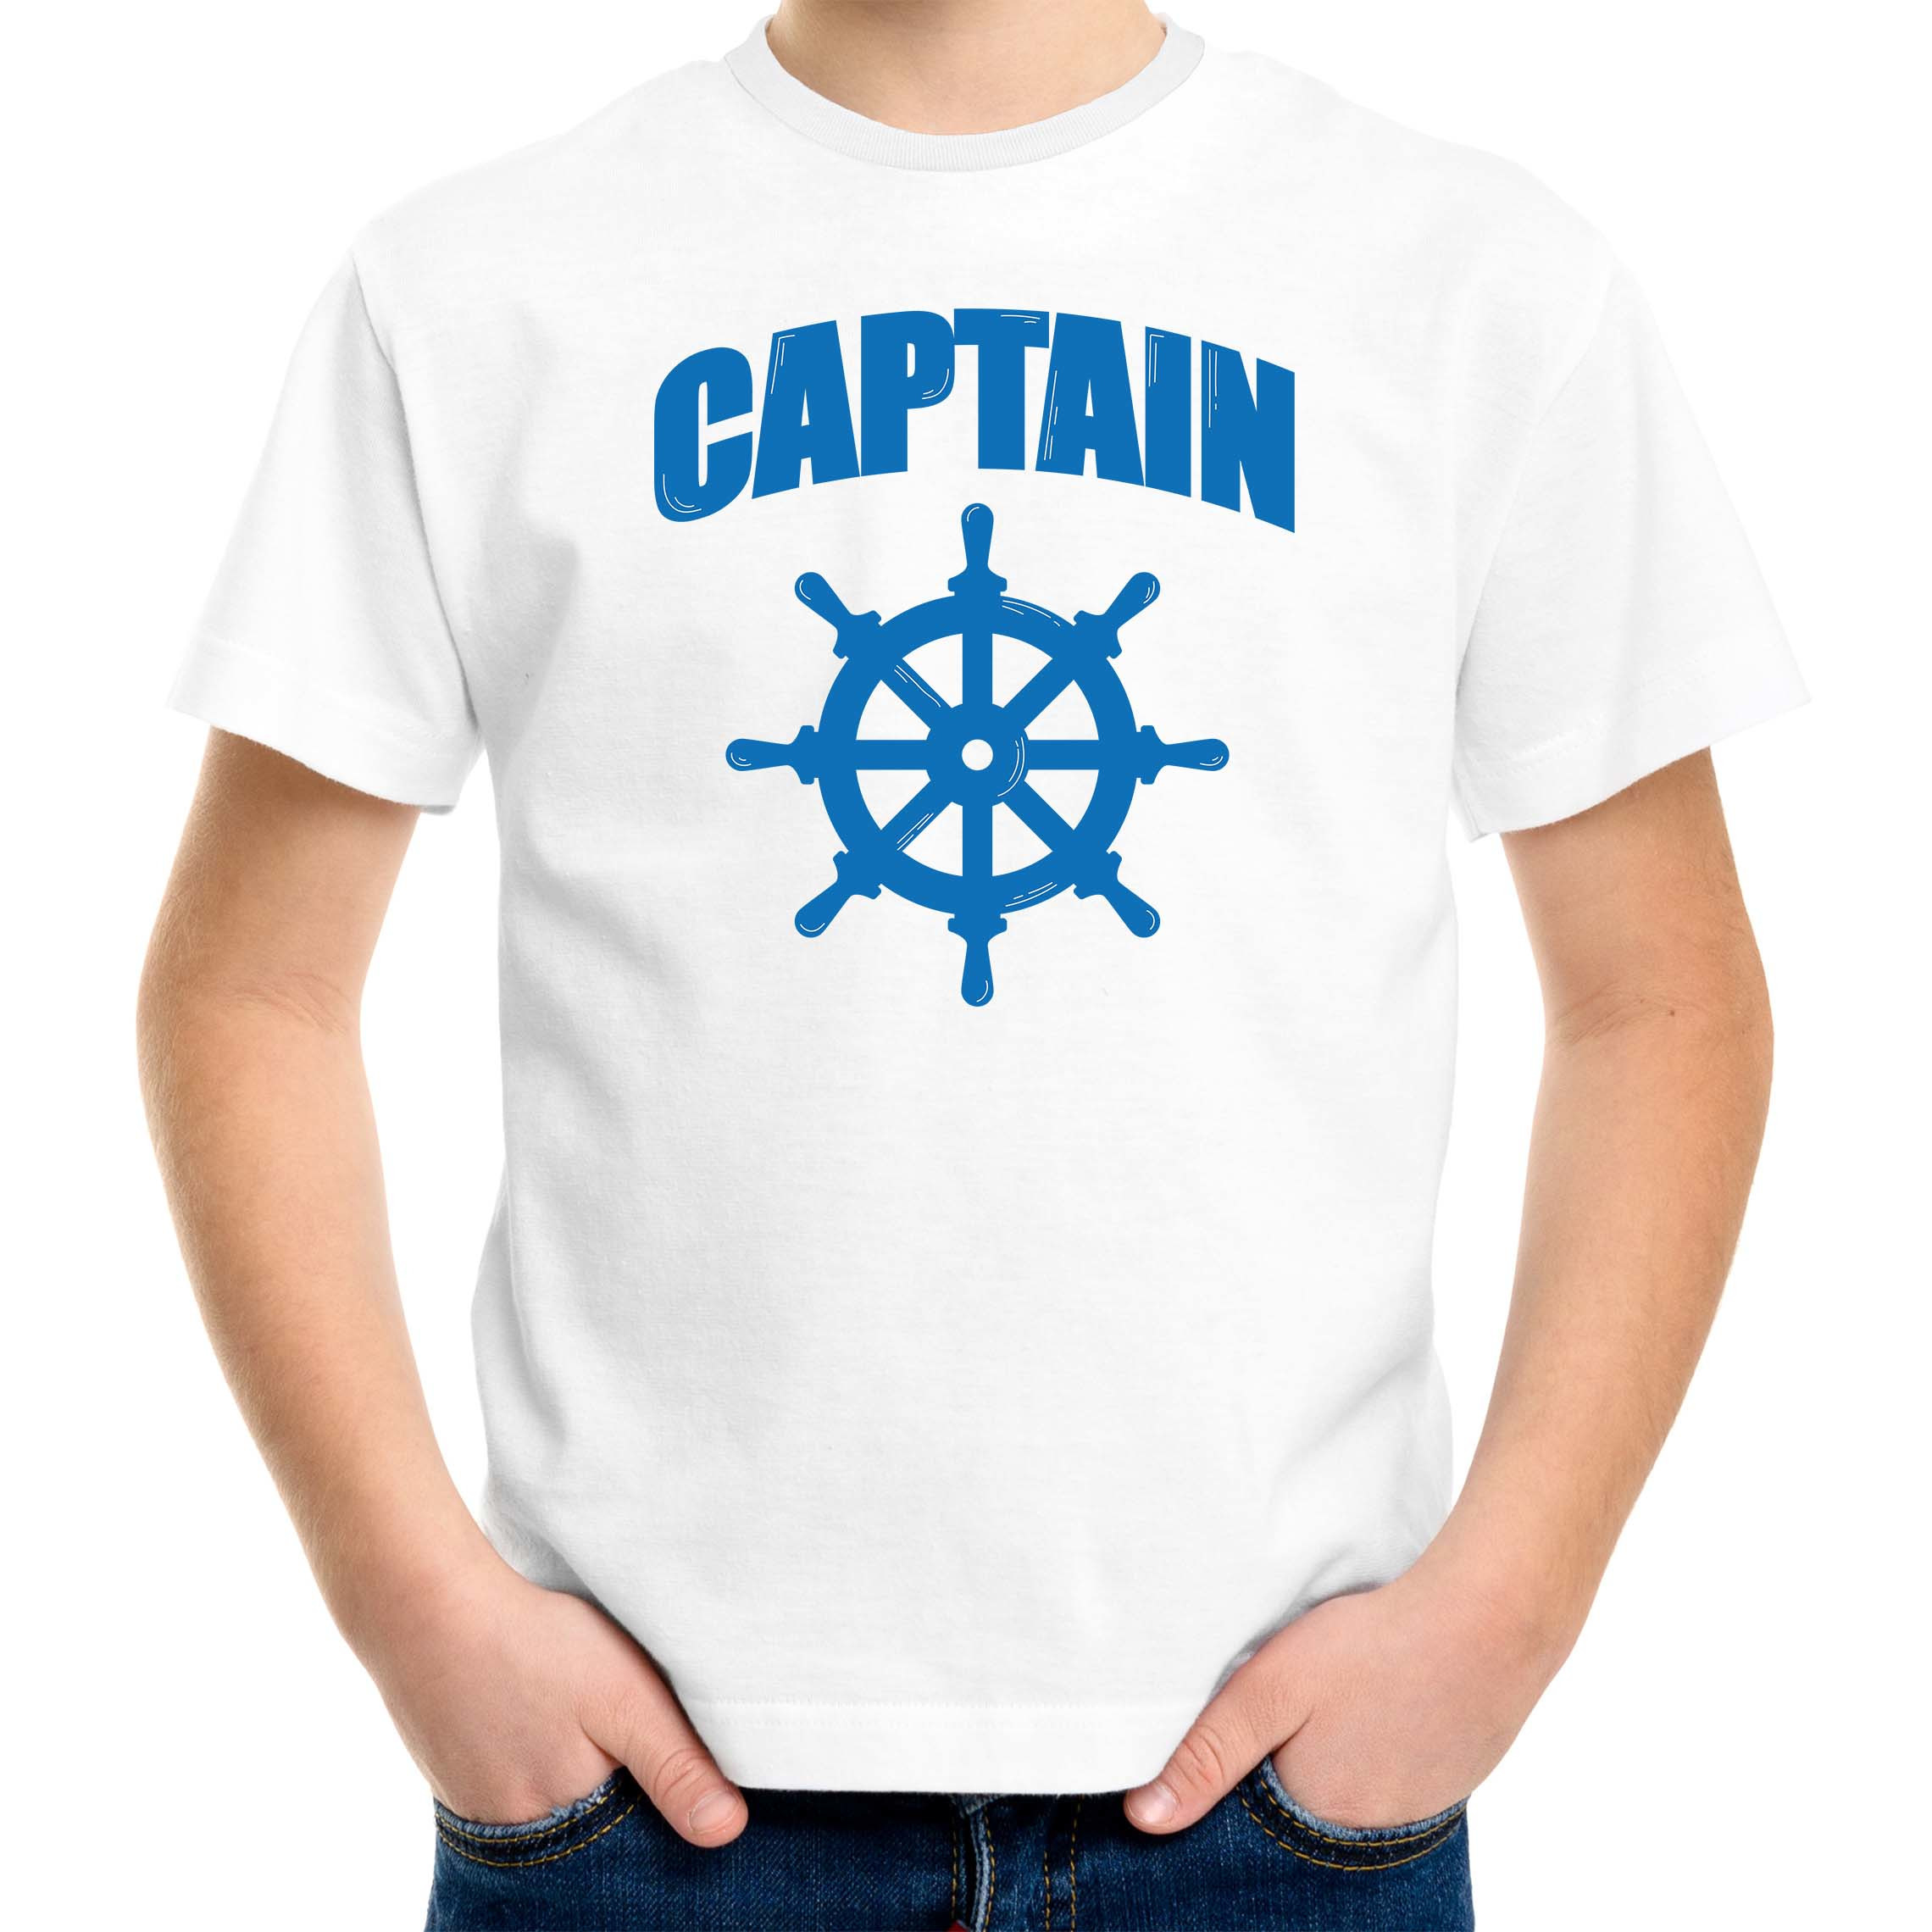 Captain-kapitein met roer-stuur verkleed t-shirt wit voor kinderen